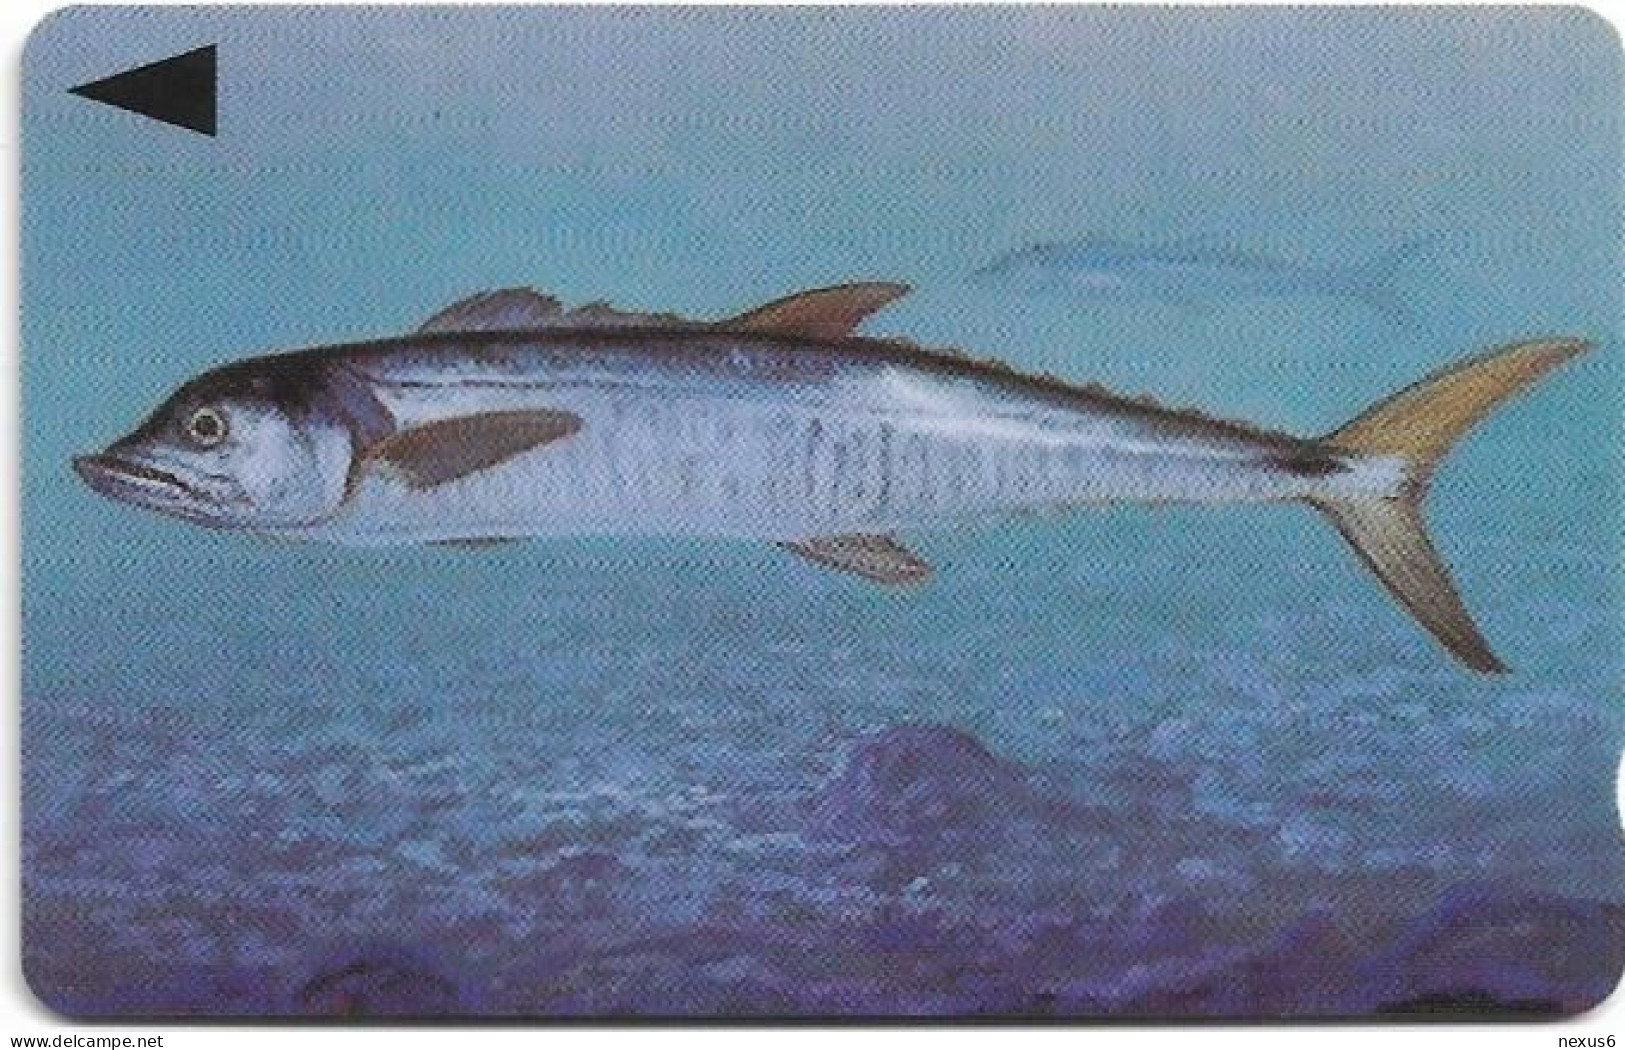 Bahrain - Batelco (GPT) - Fish Of Bahrain - Spanish Mackerel - 39BAHR (Dashed Ø), 1996, 50Units, Used - Bahrein